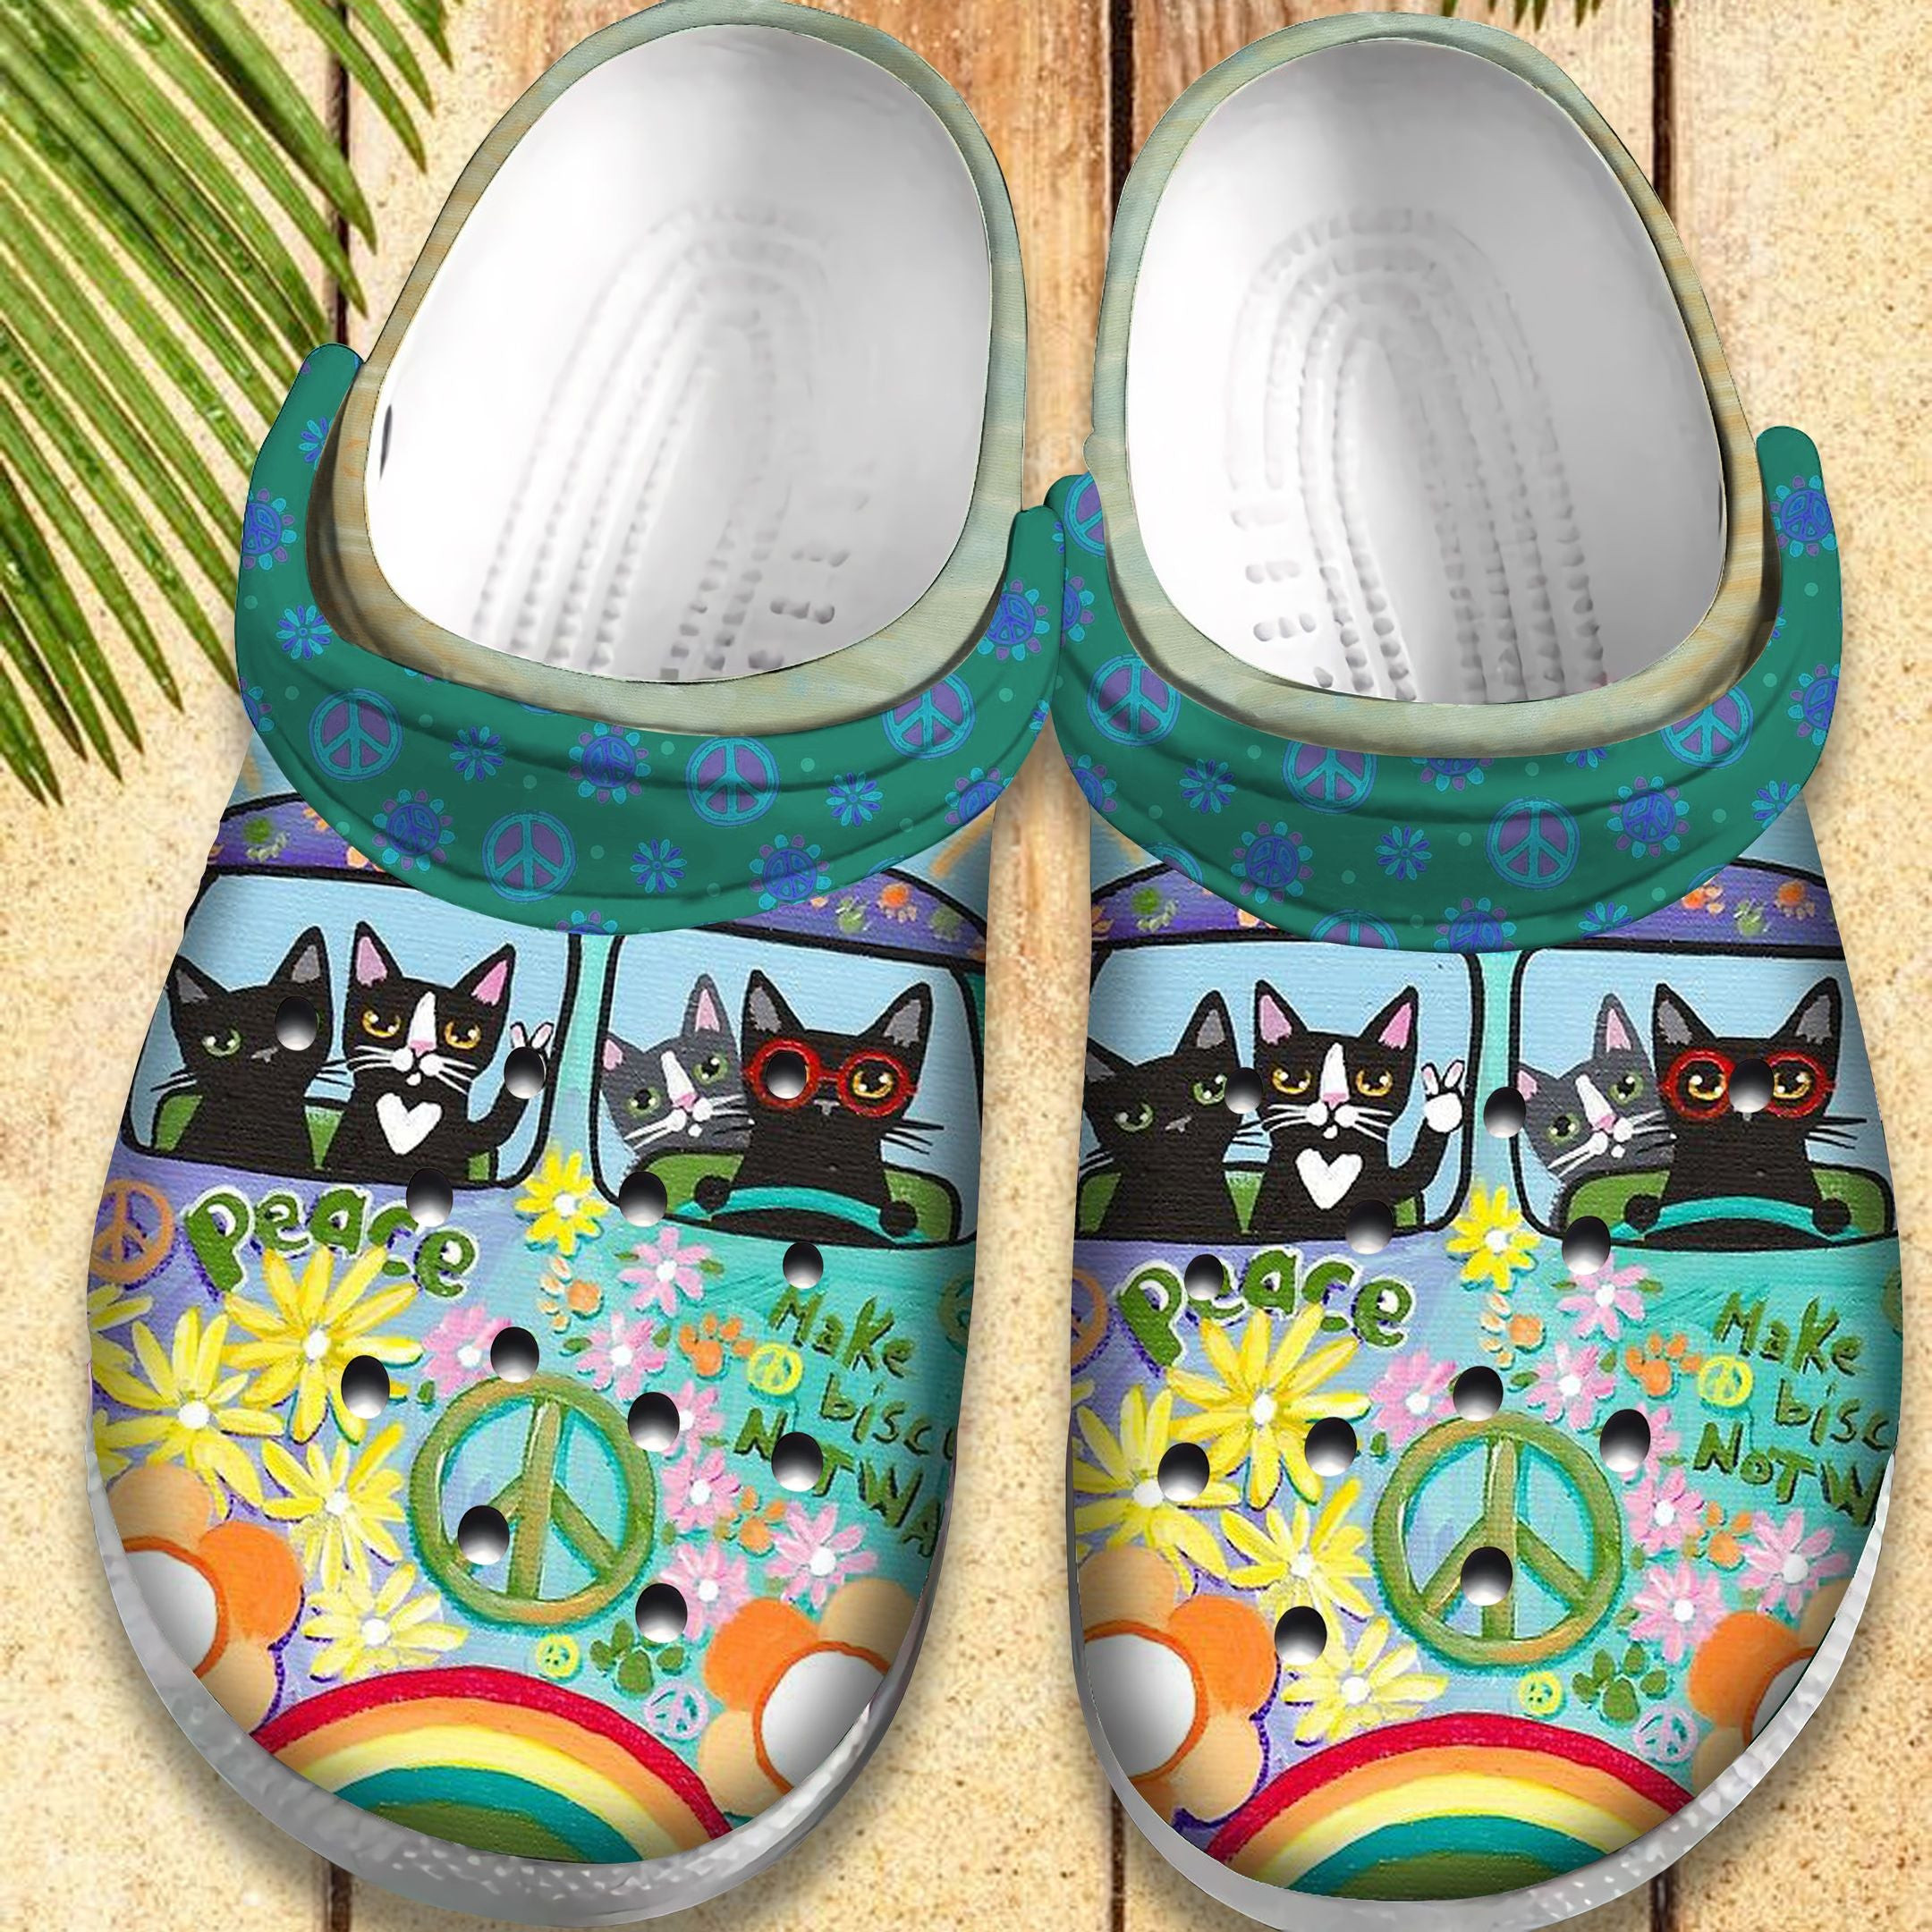 Hippie Vans Bus Shoes - Hippie Cat Van Retro Custom Shoes Birthday Gift For Men Women Boy Girl